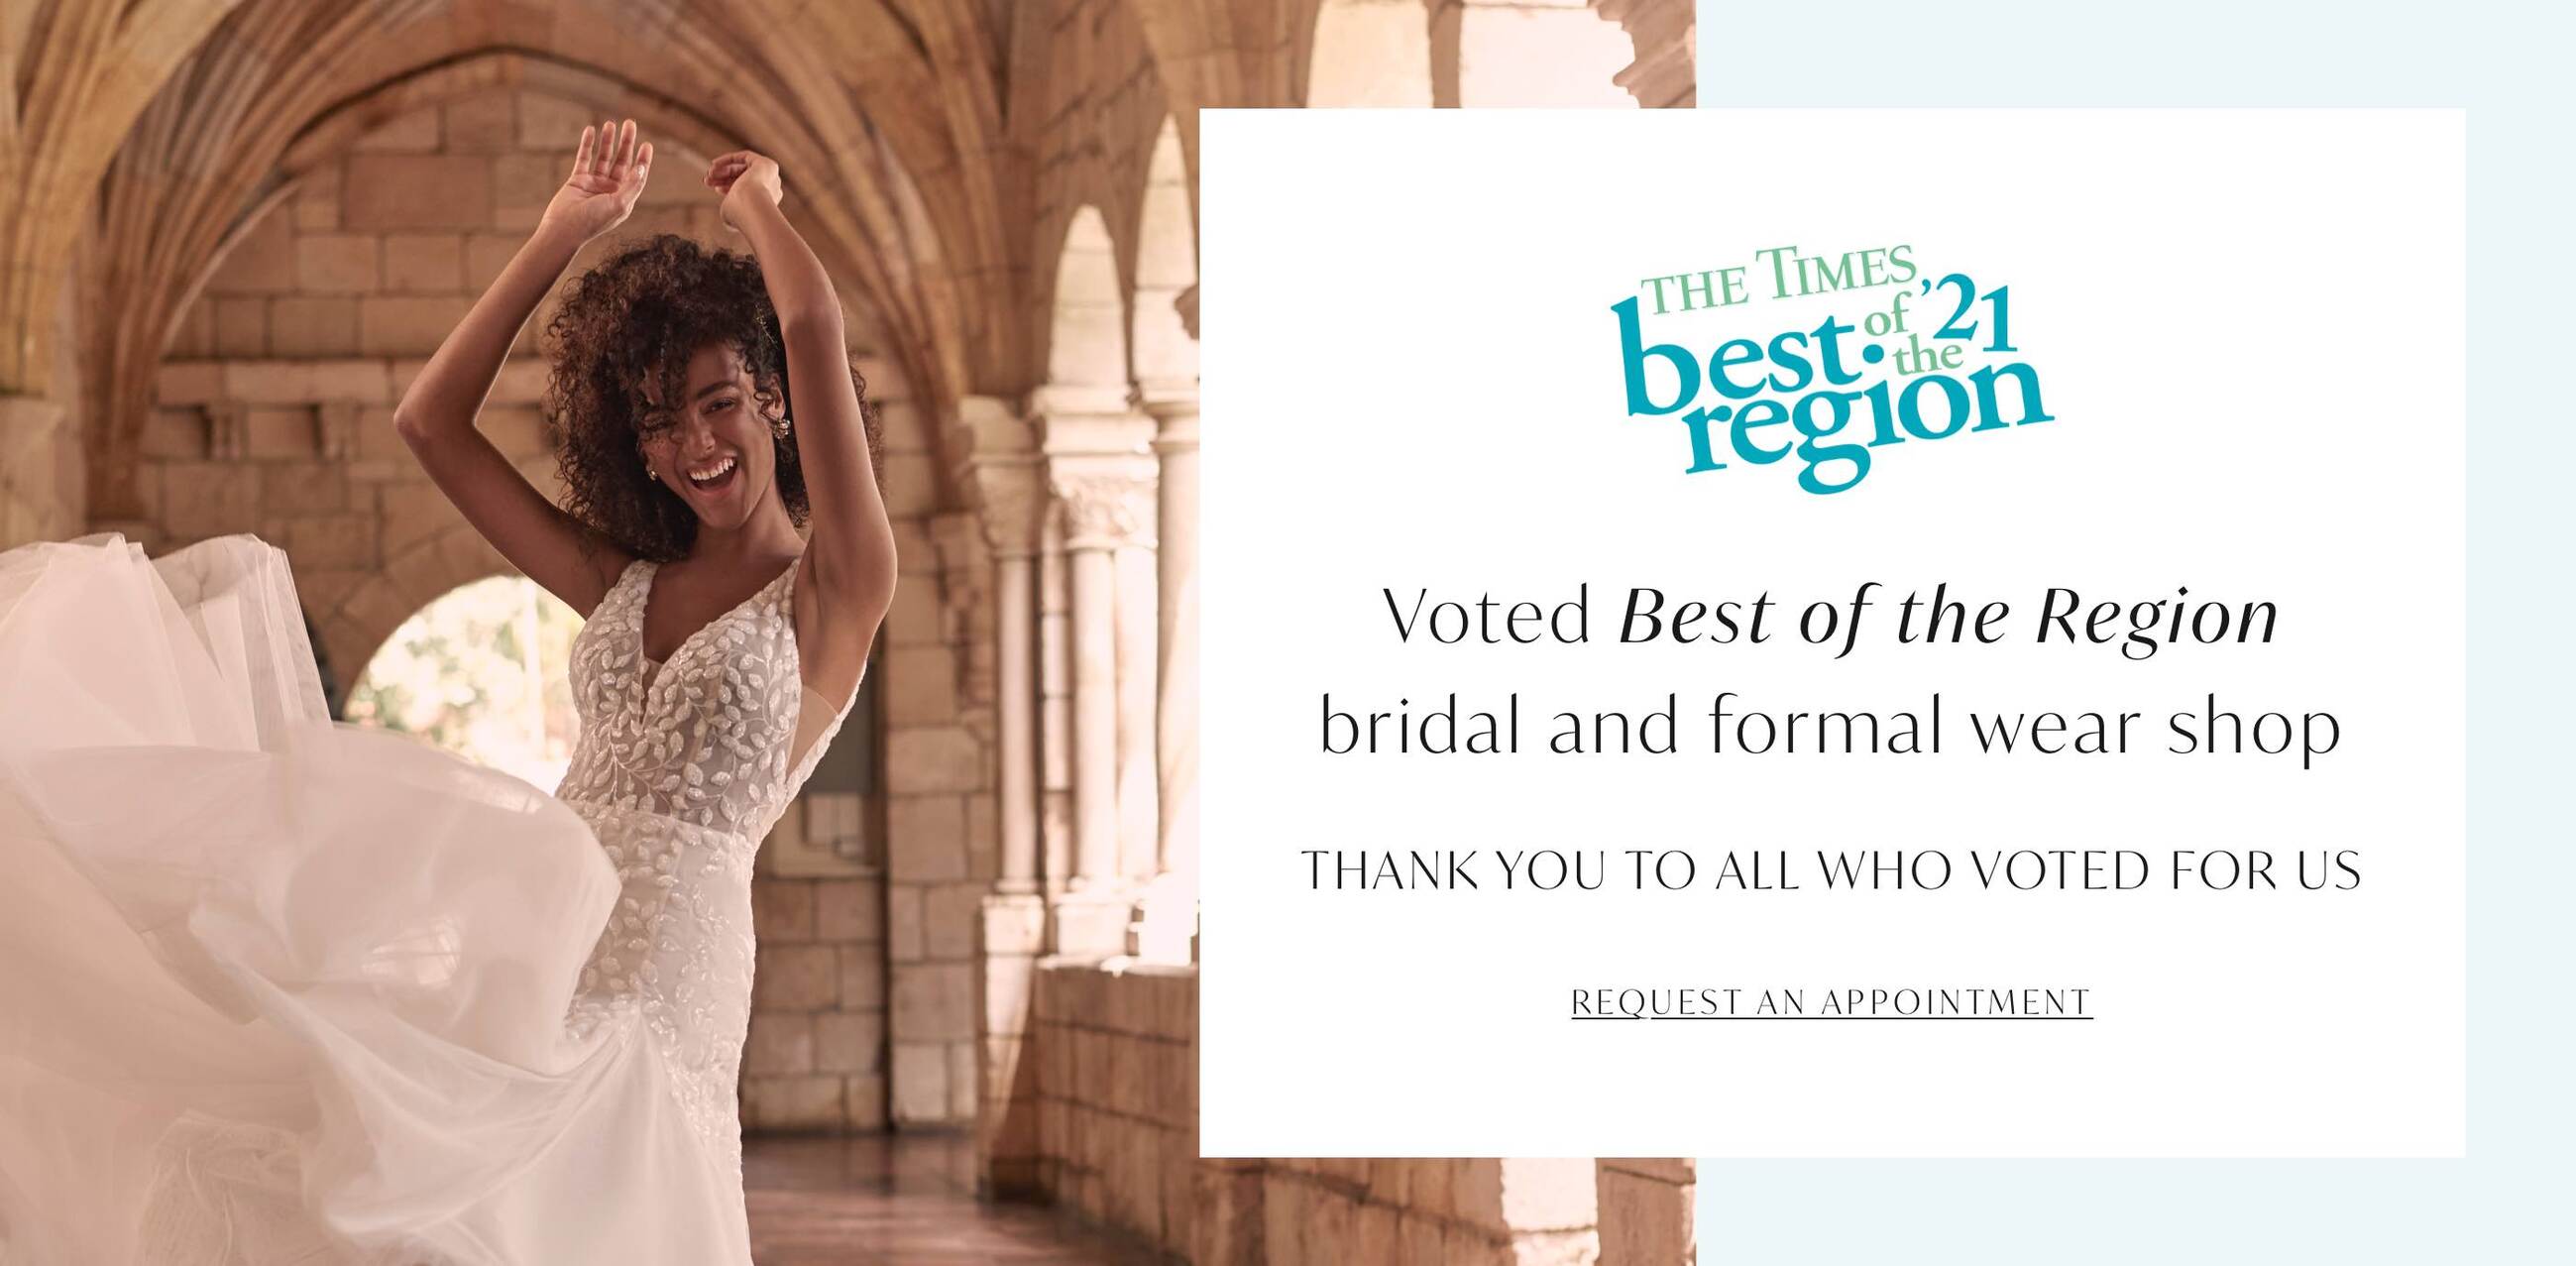 Best of the region bridal and formal wear shop. Buy your wedding dress at Elegance Wedding. Desktop image.